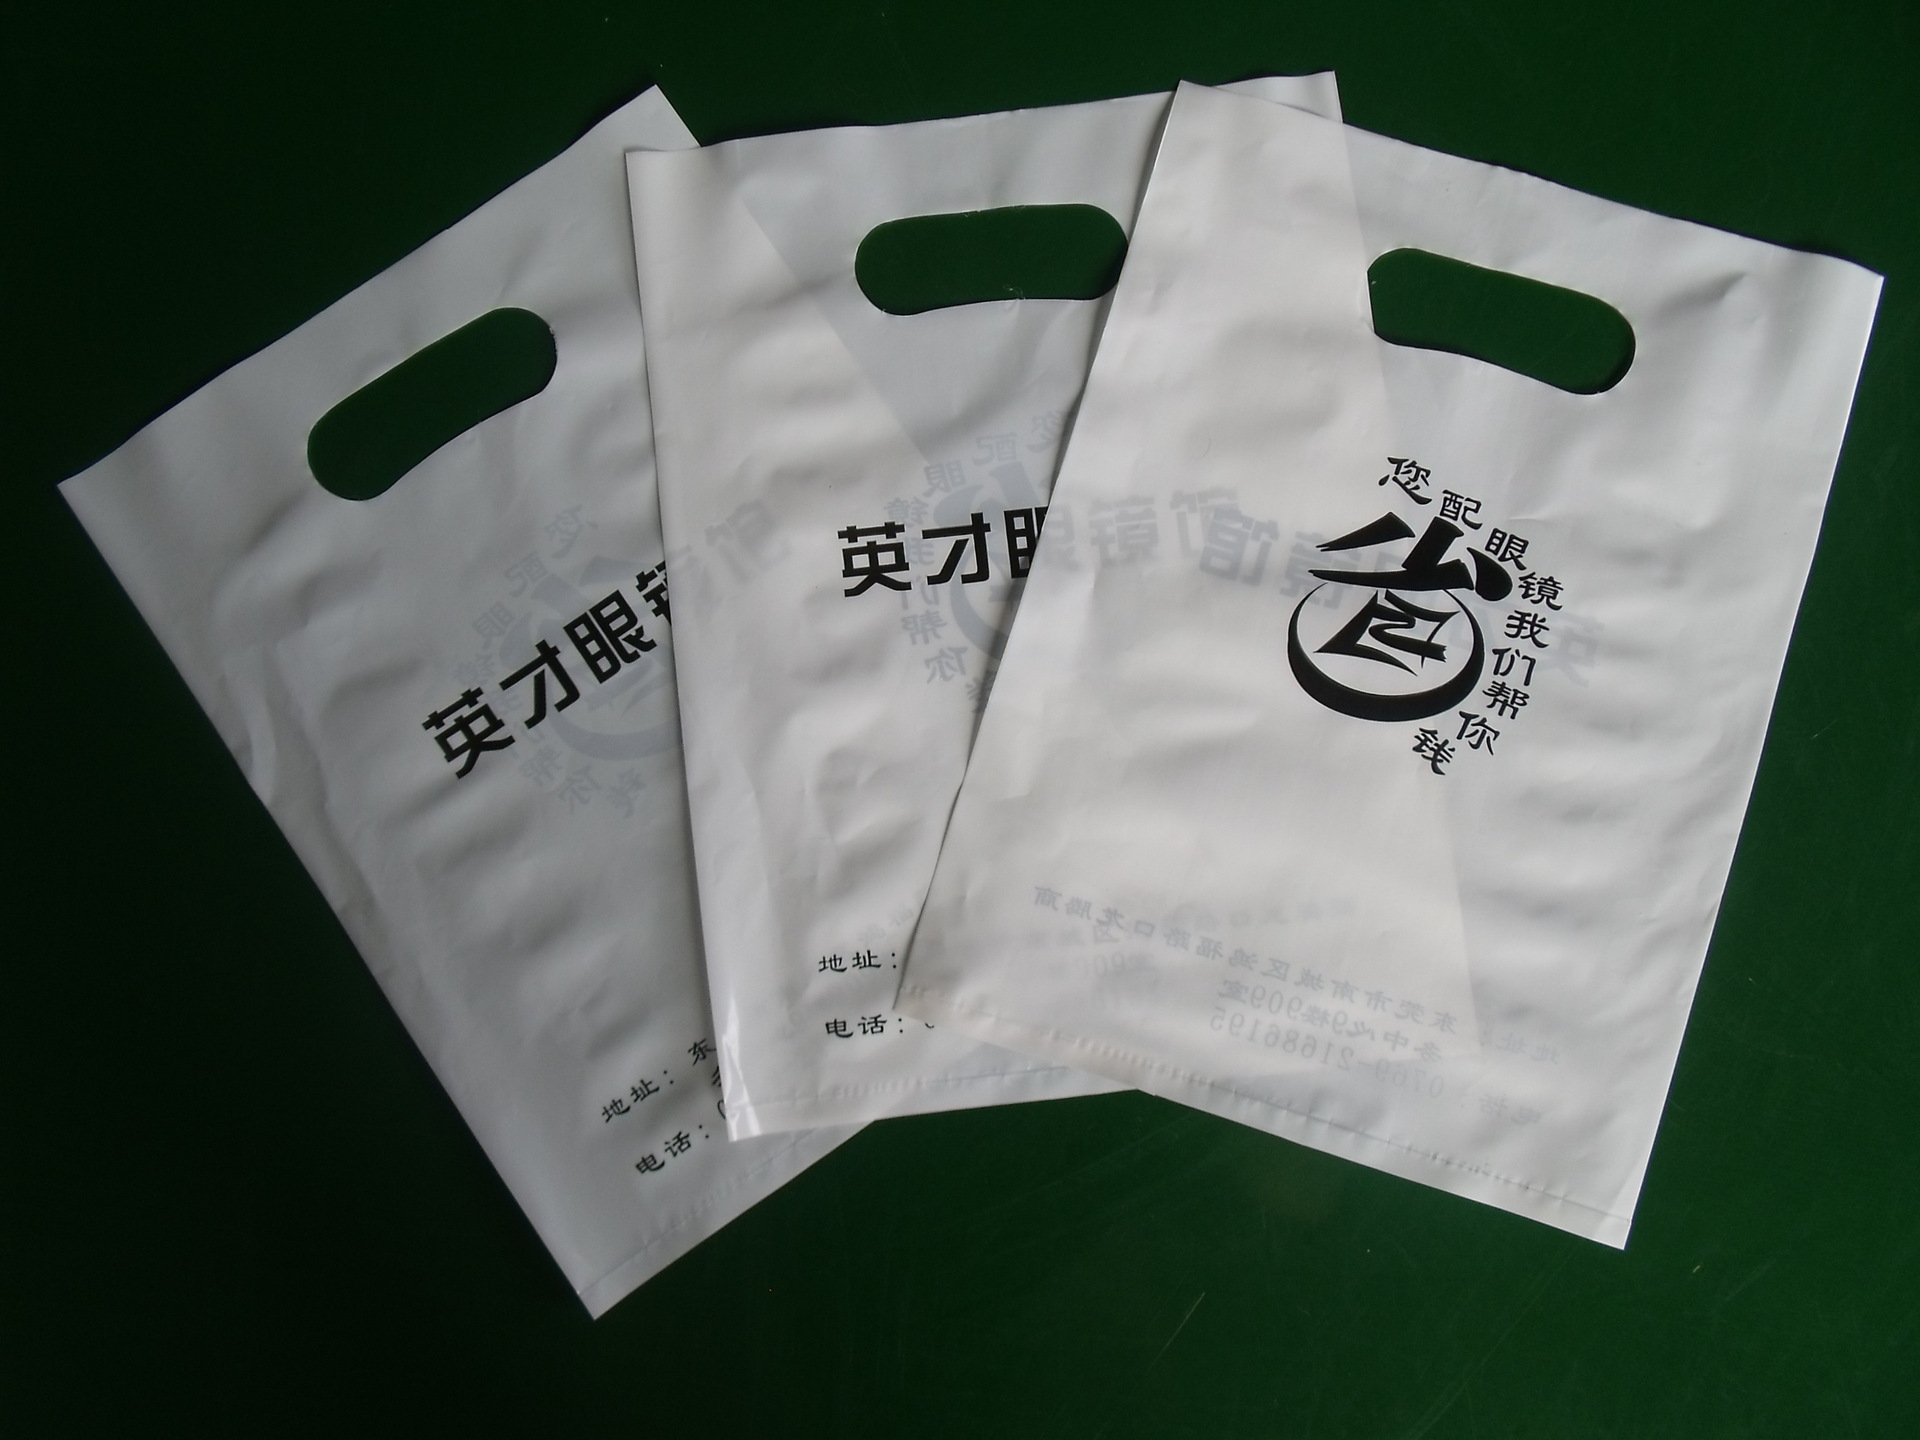 厂家直销 批发订做各种塑料袋 环保服装三群胶袋印制定制纸袋